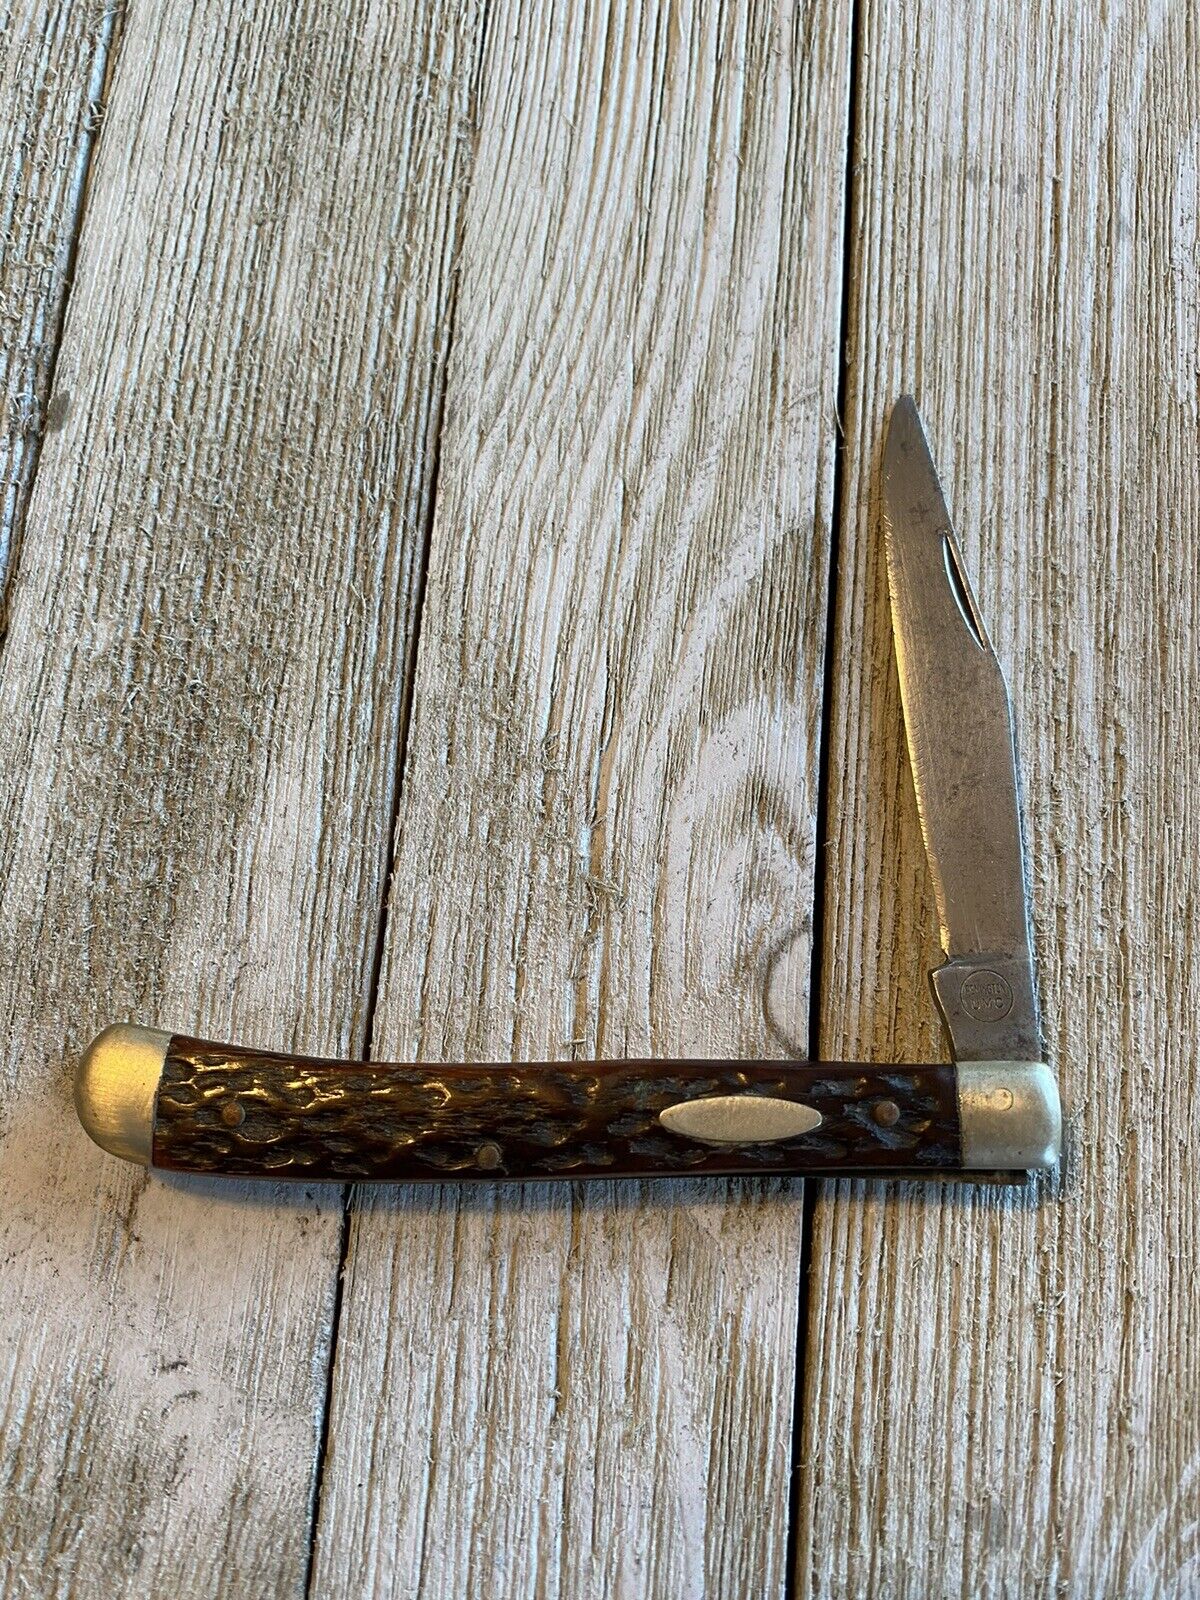 Vintage UMC Remington 1 blade trapper knife 